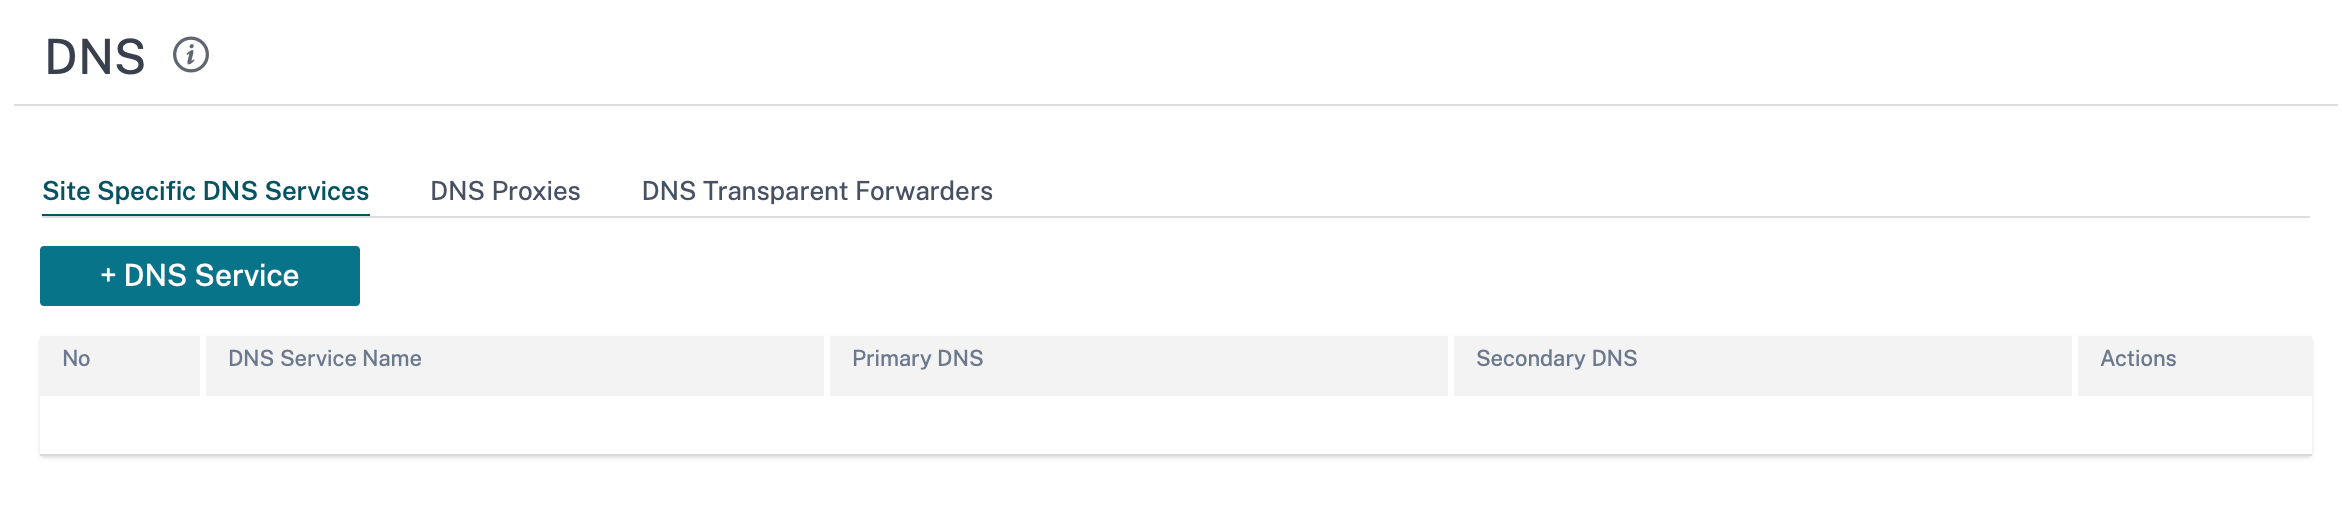 Paramètres DNS de configuration du site